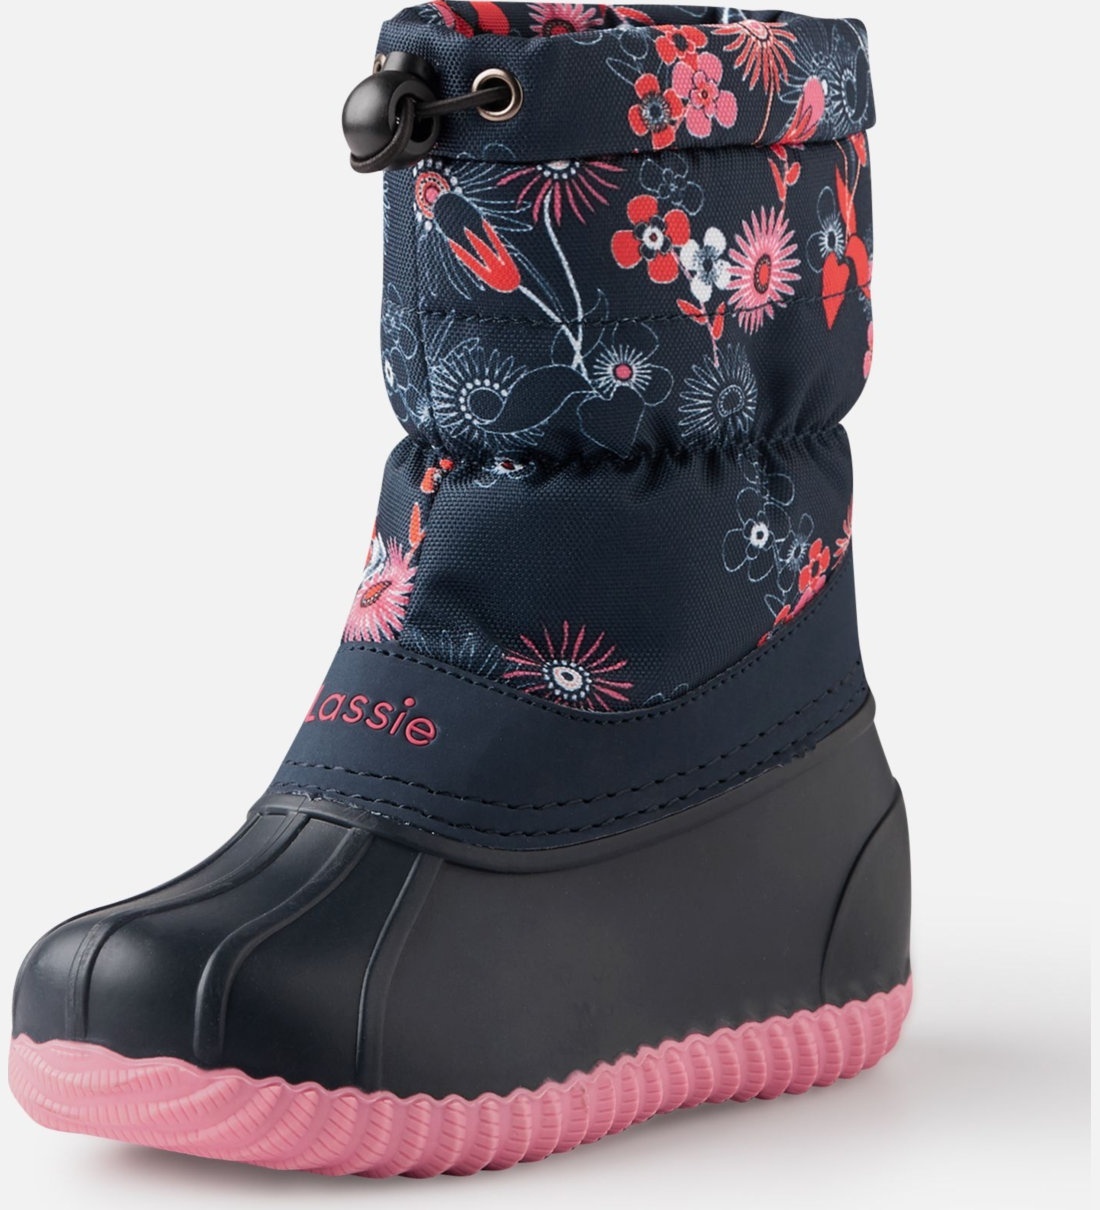 Ботинки Зимние Lassie Tundra 769145-6961 - купить в интернет-магазинеBonKids.ru